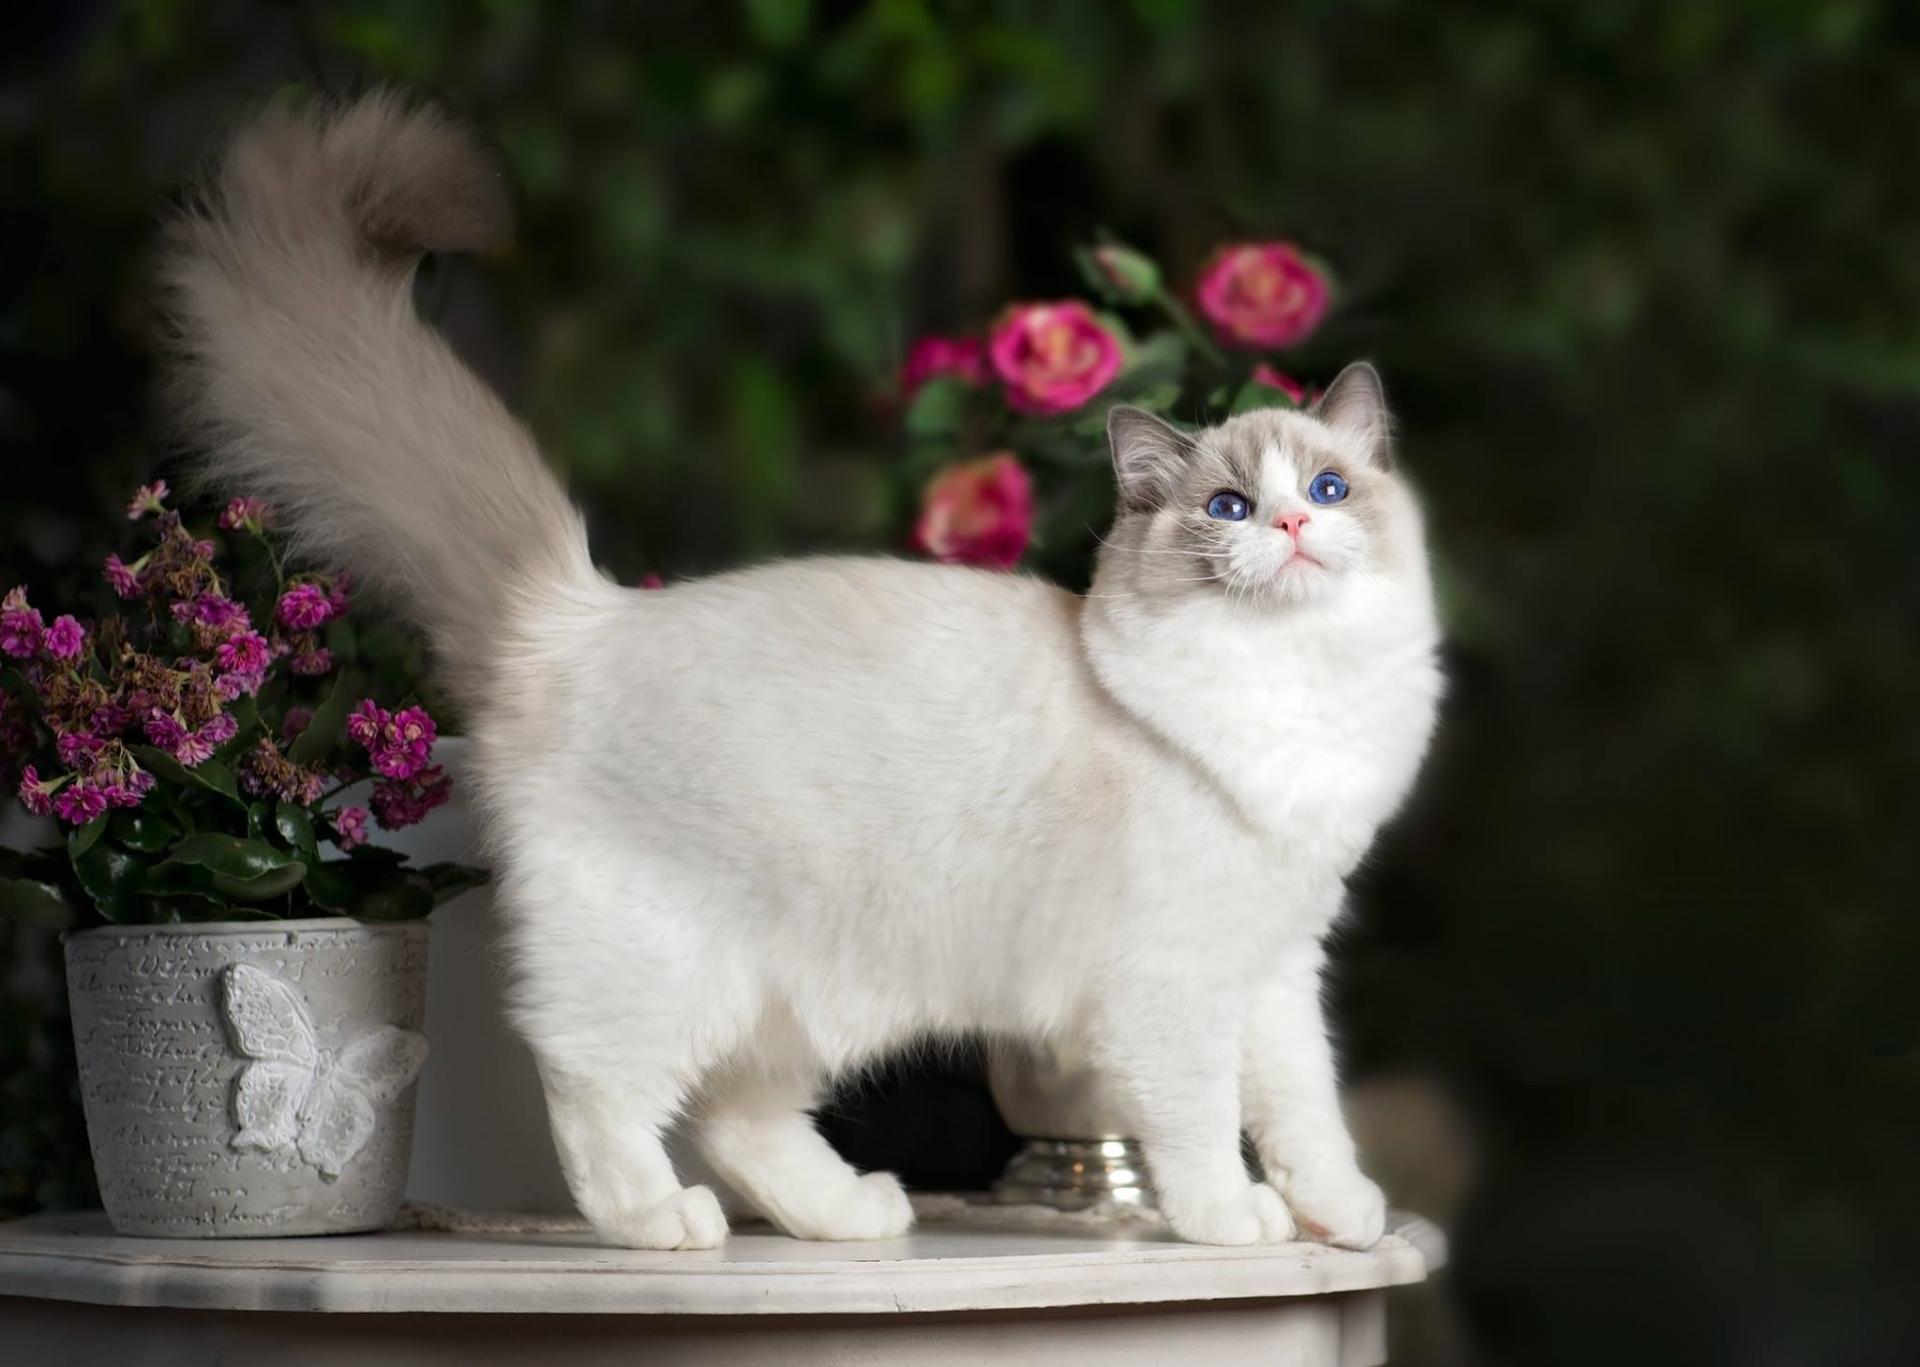 Cat breed reg dollars in flowers